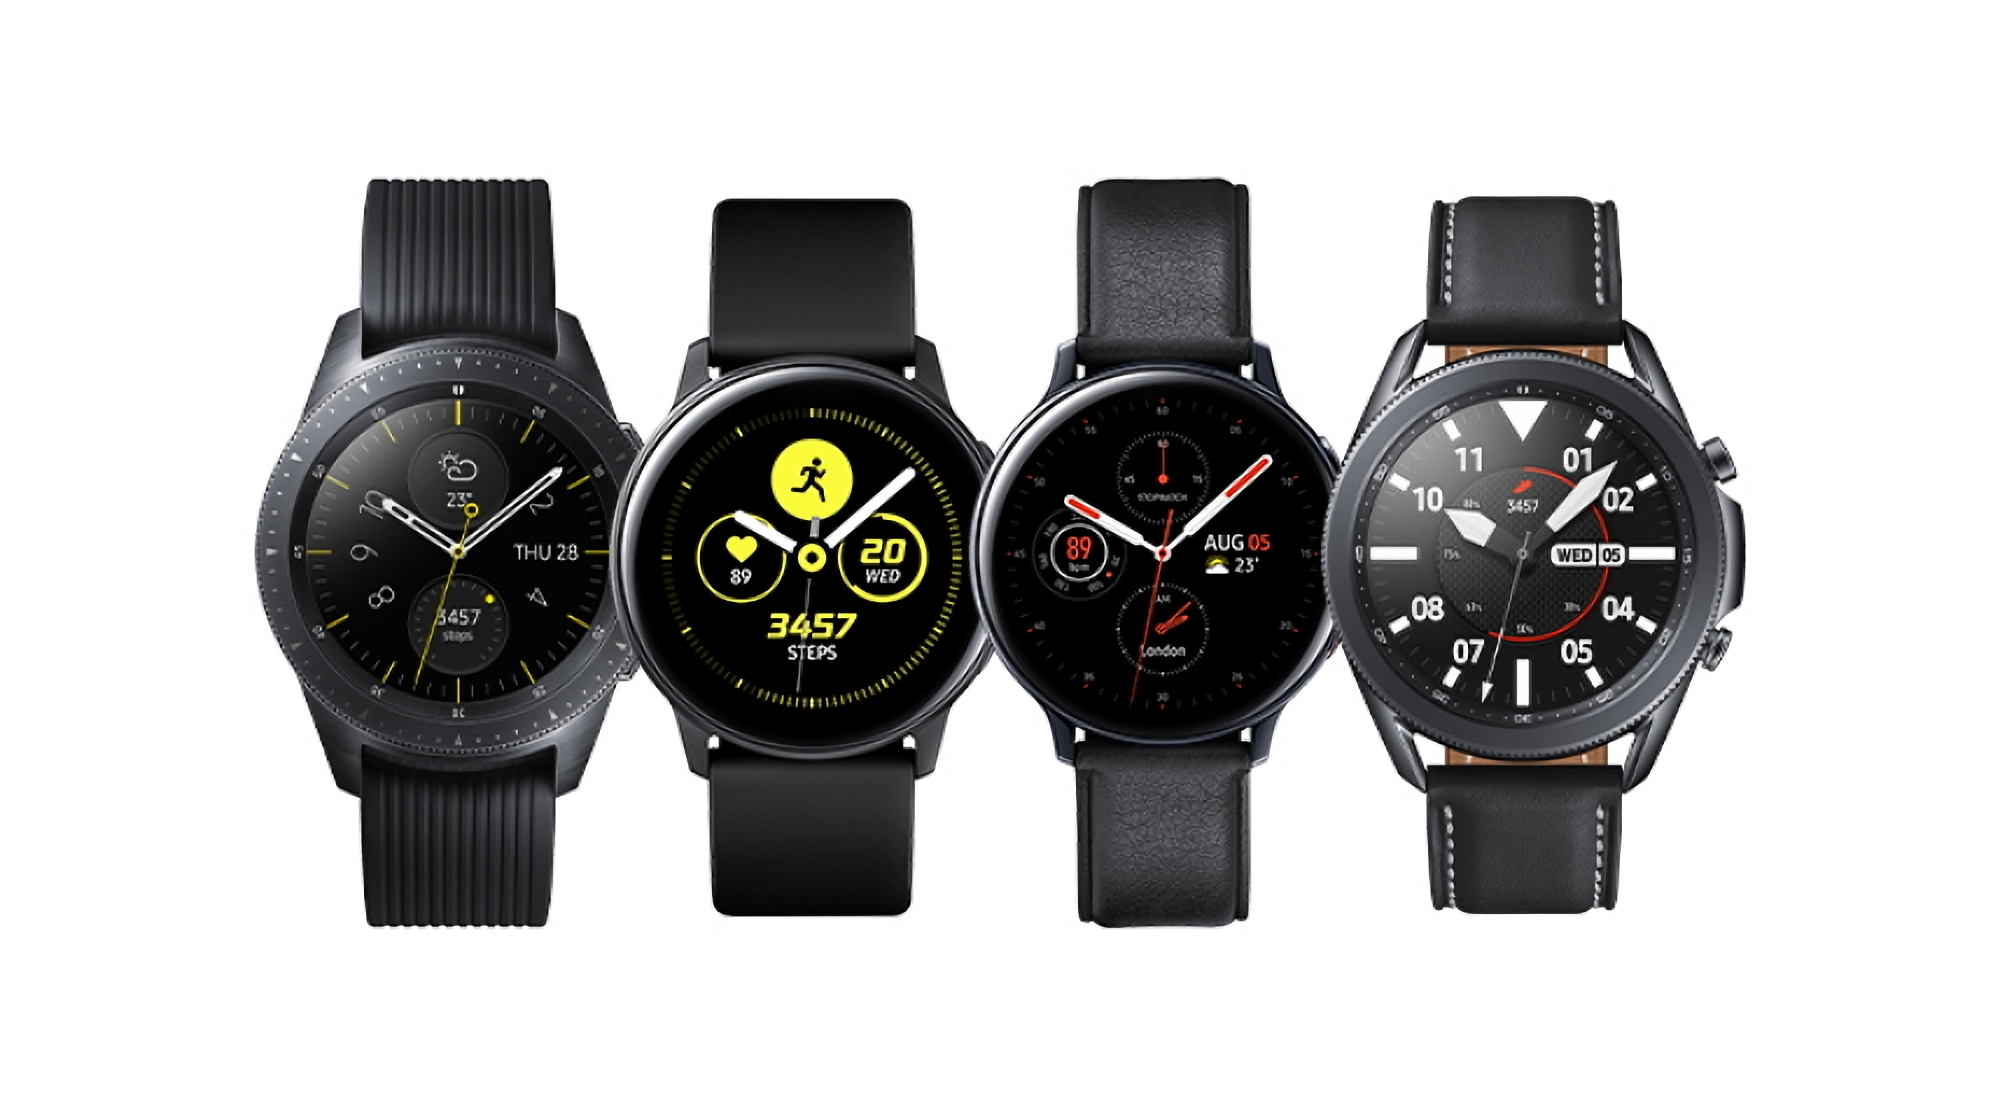 Oryginalne smartwatche Samsung Galaxy Watch i Galaxy Watch Active zaczynają otrzymywać nową aktualizację oprogramowania